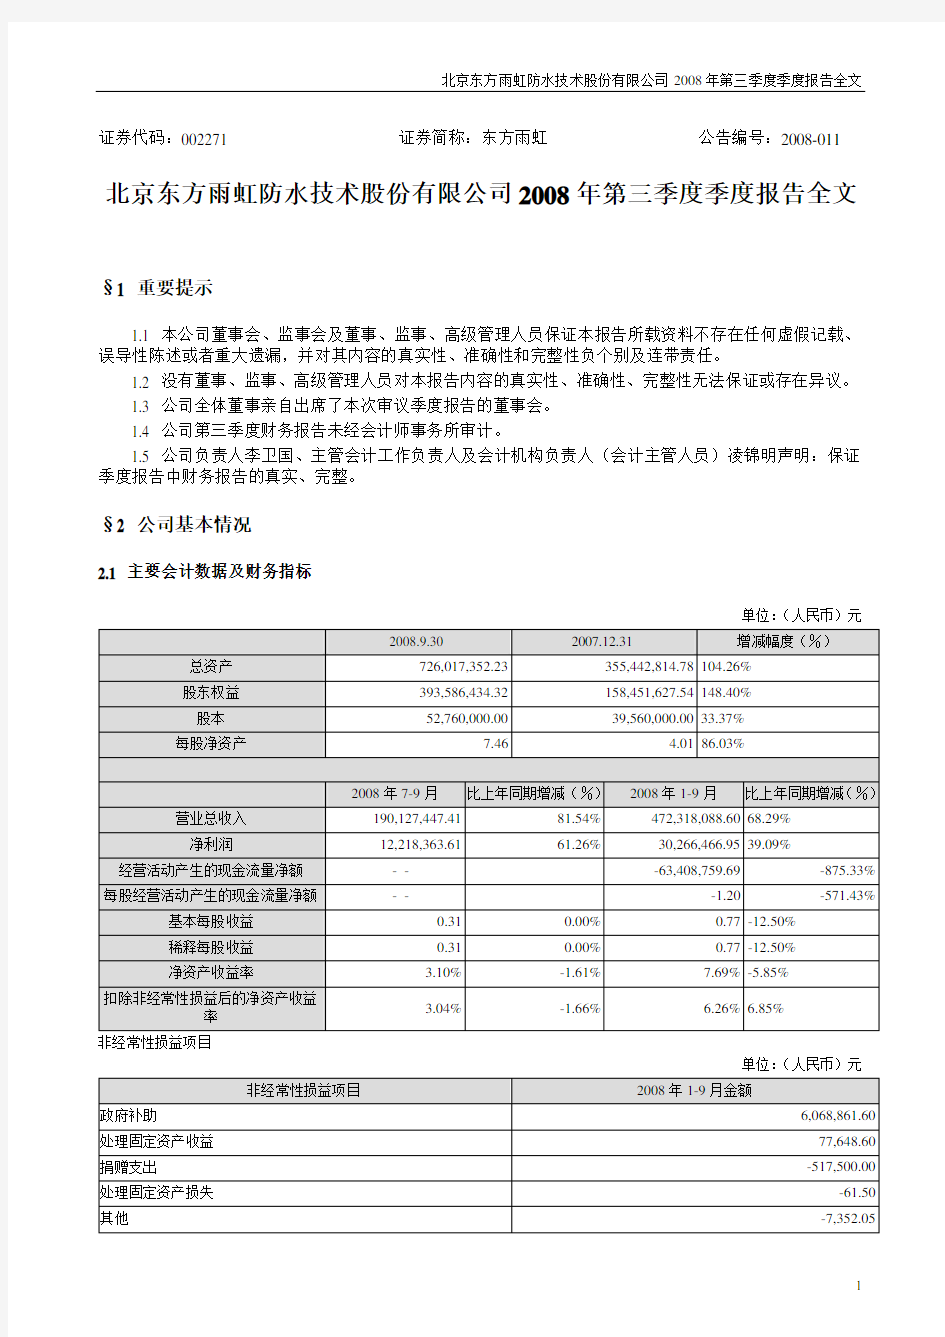 北京东方雨虹防水技术股份有限公司2008年第三季度季度报告全文